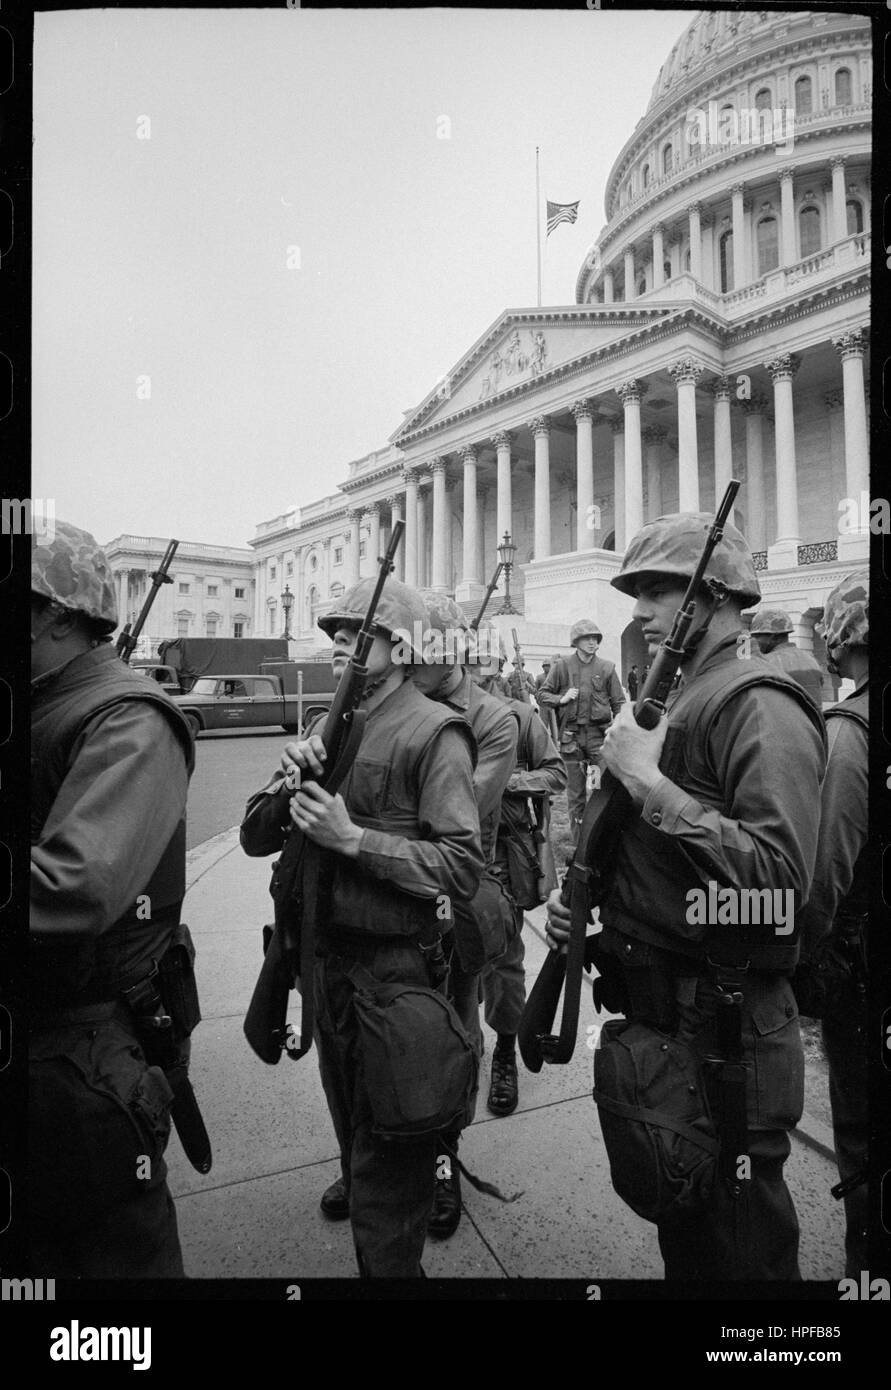 Le truppe nella parte anteriore di U S Capitol durante i tumulti che seguirono il Dr Martin Luther King Jr, l'assassinio, Washington DC, 04/08/1968. Foto di Warren K Leffler Foto Stock